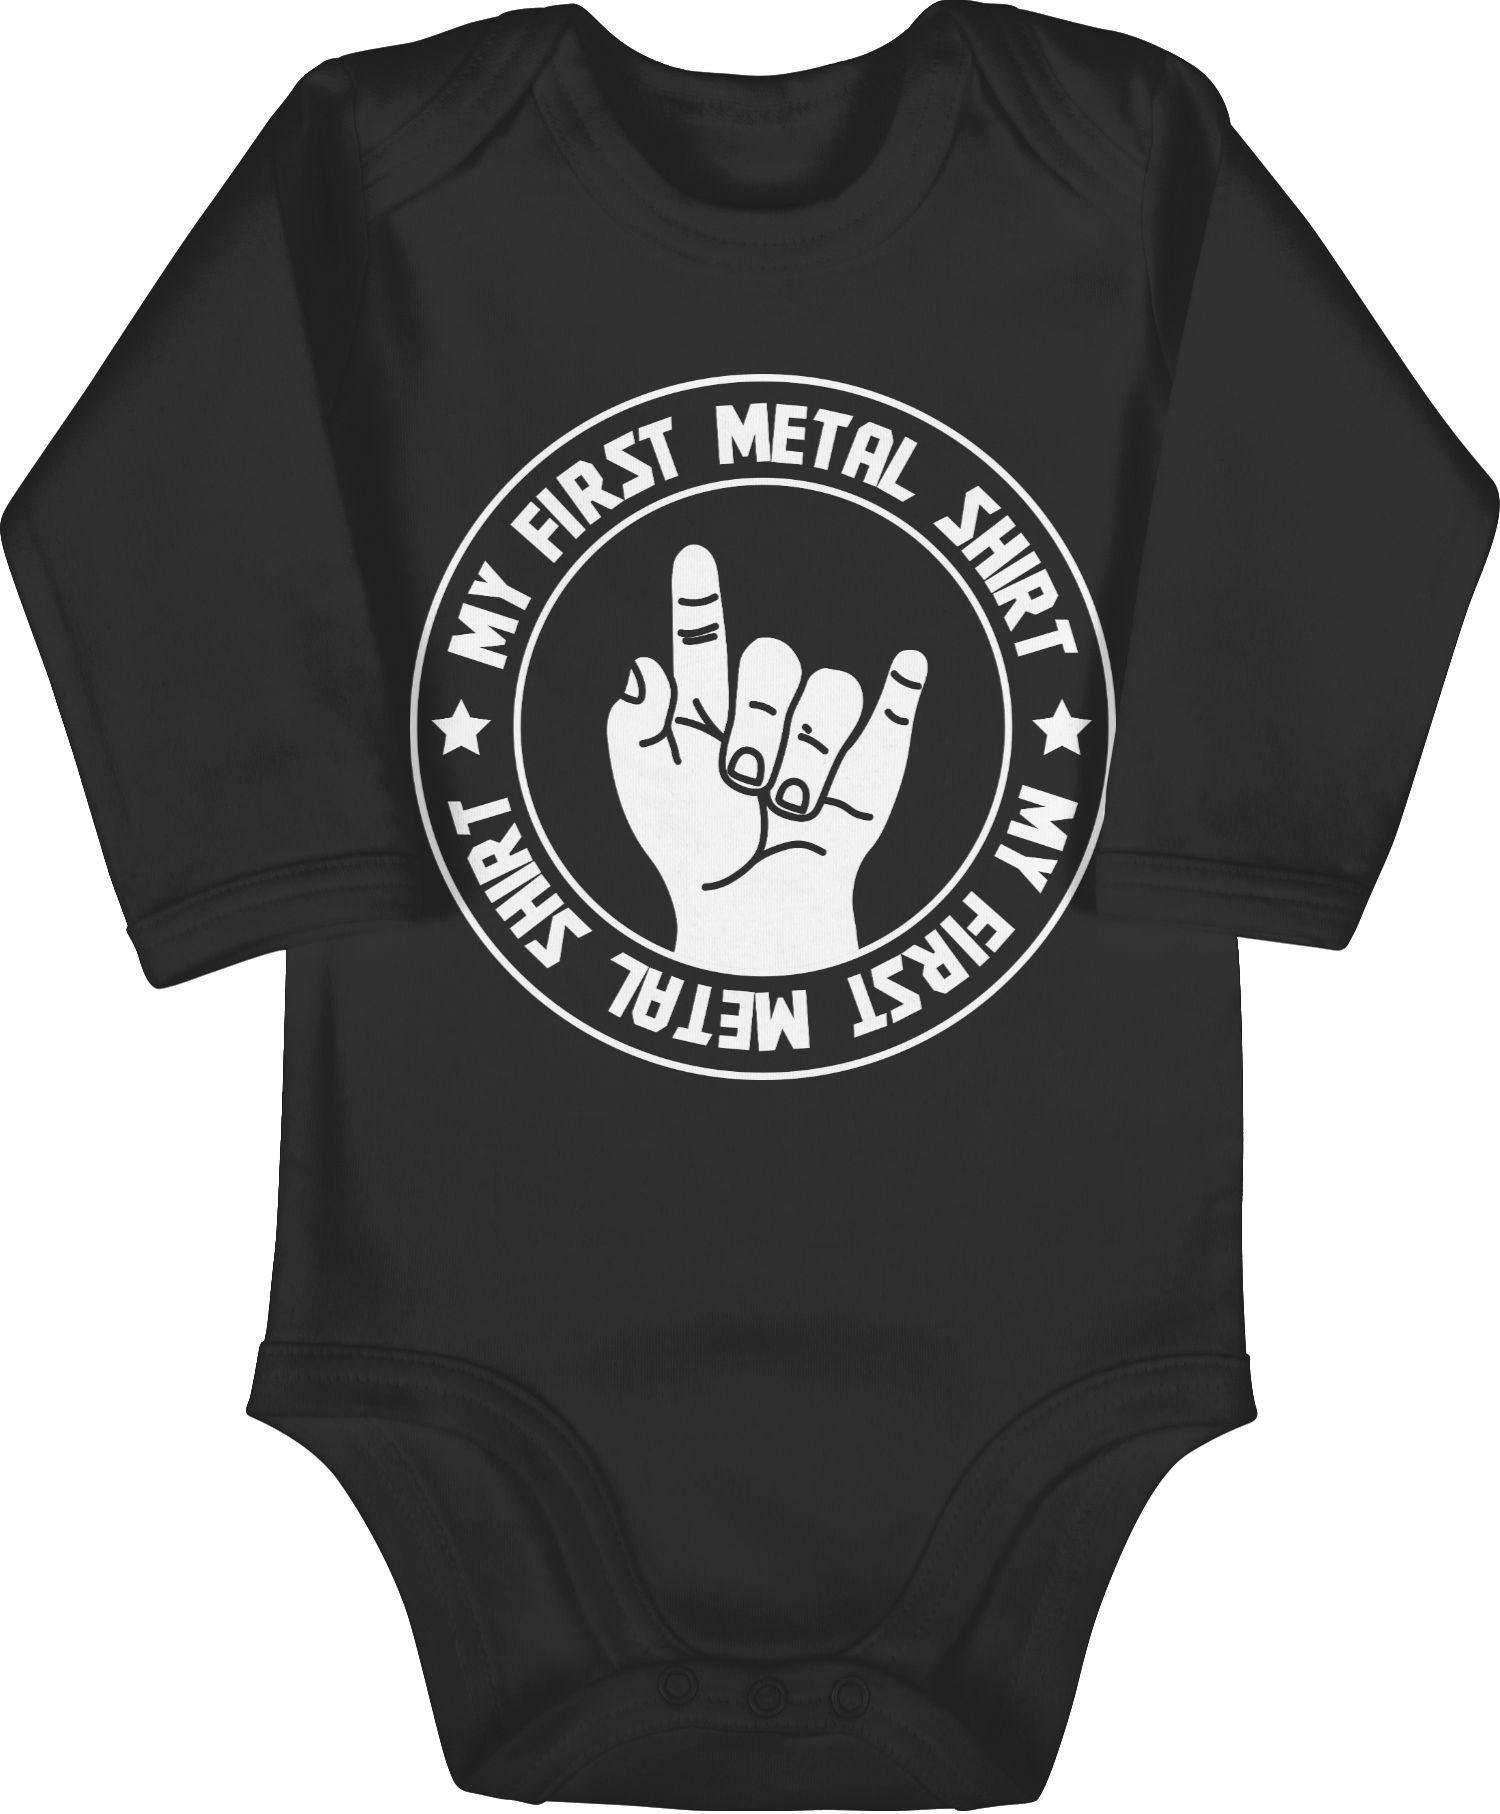 Mädchen & Strampler Metal Schwarz My Junge first Shirt 1 Shirtracer Shirtbody Baby